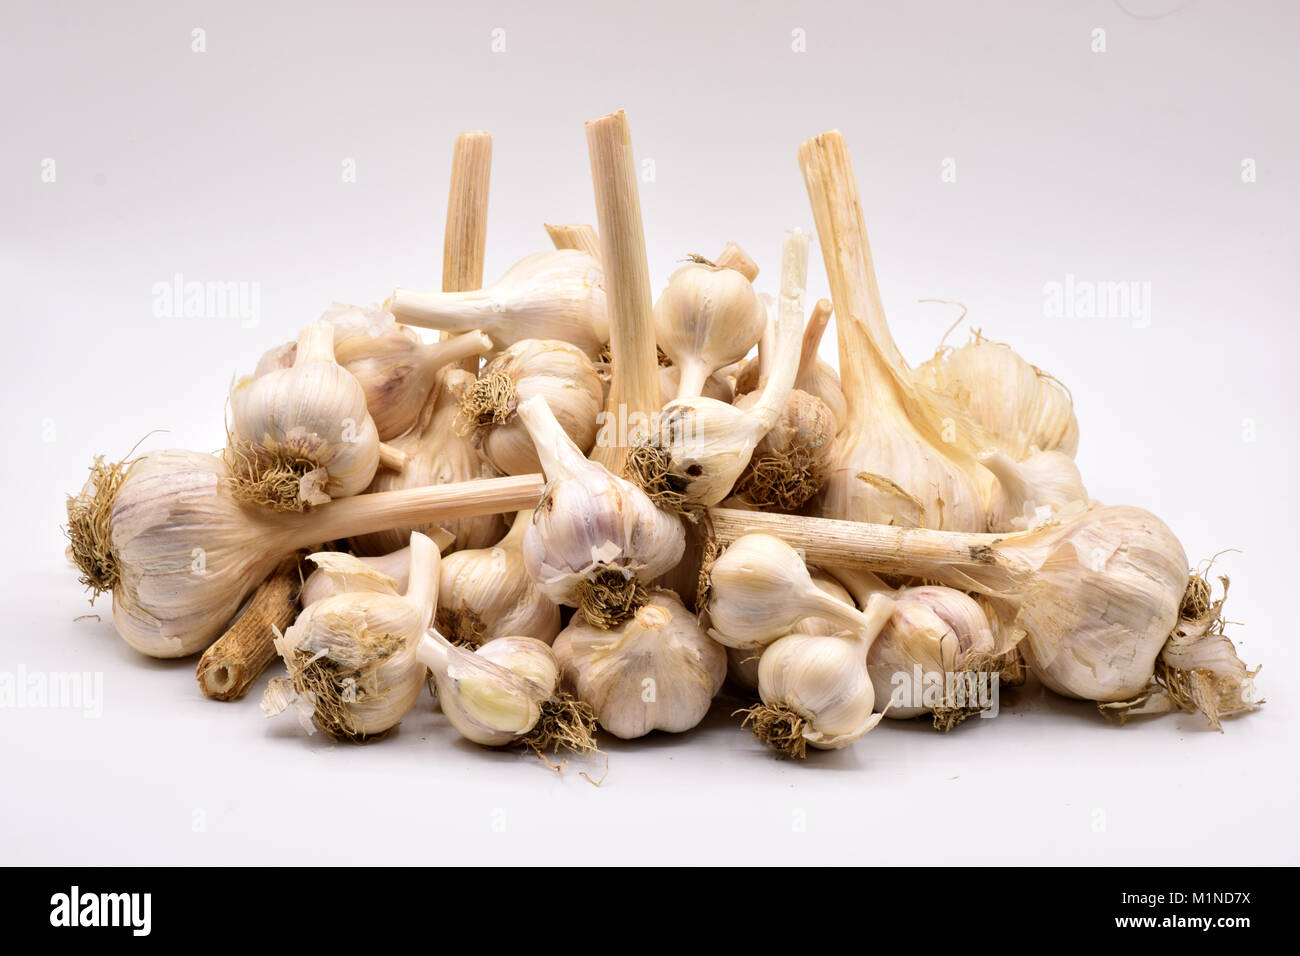 Deliziosi bulbi di aglio con lunghi steli disposti su una transizione senza sfondo bianco Foto Stock